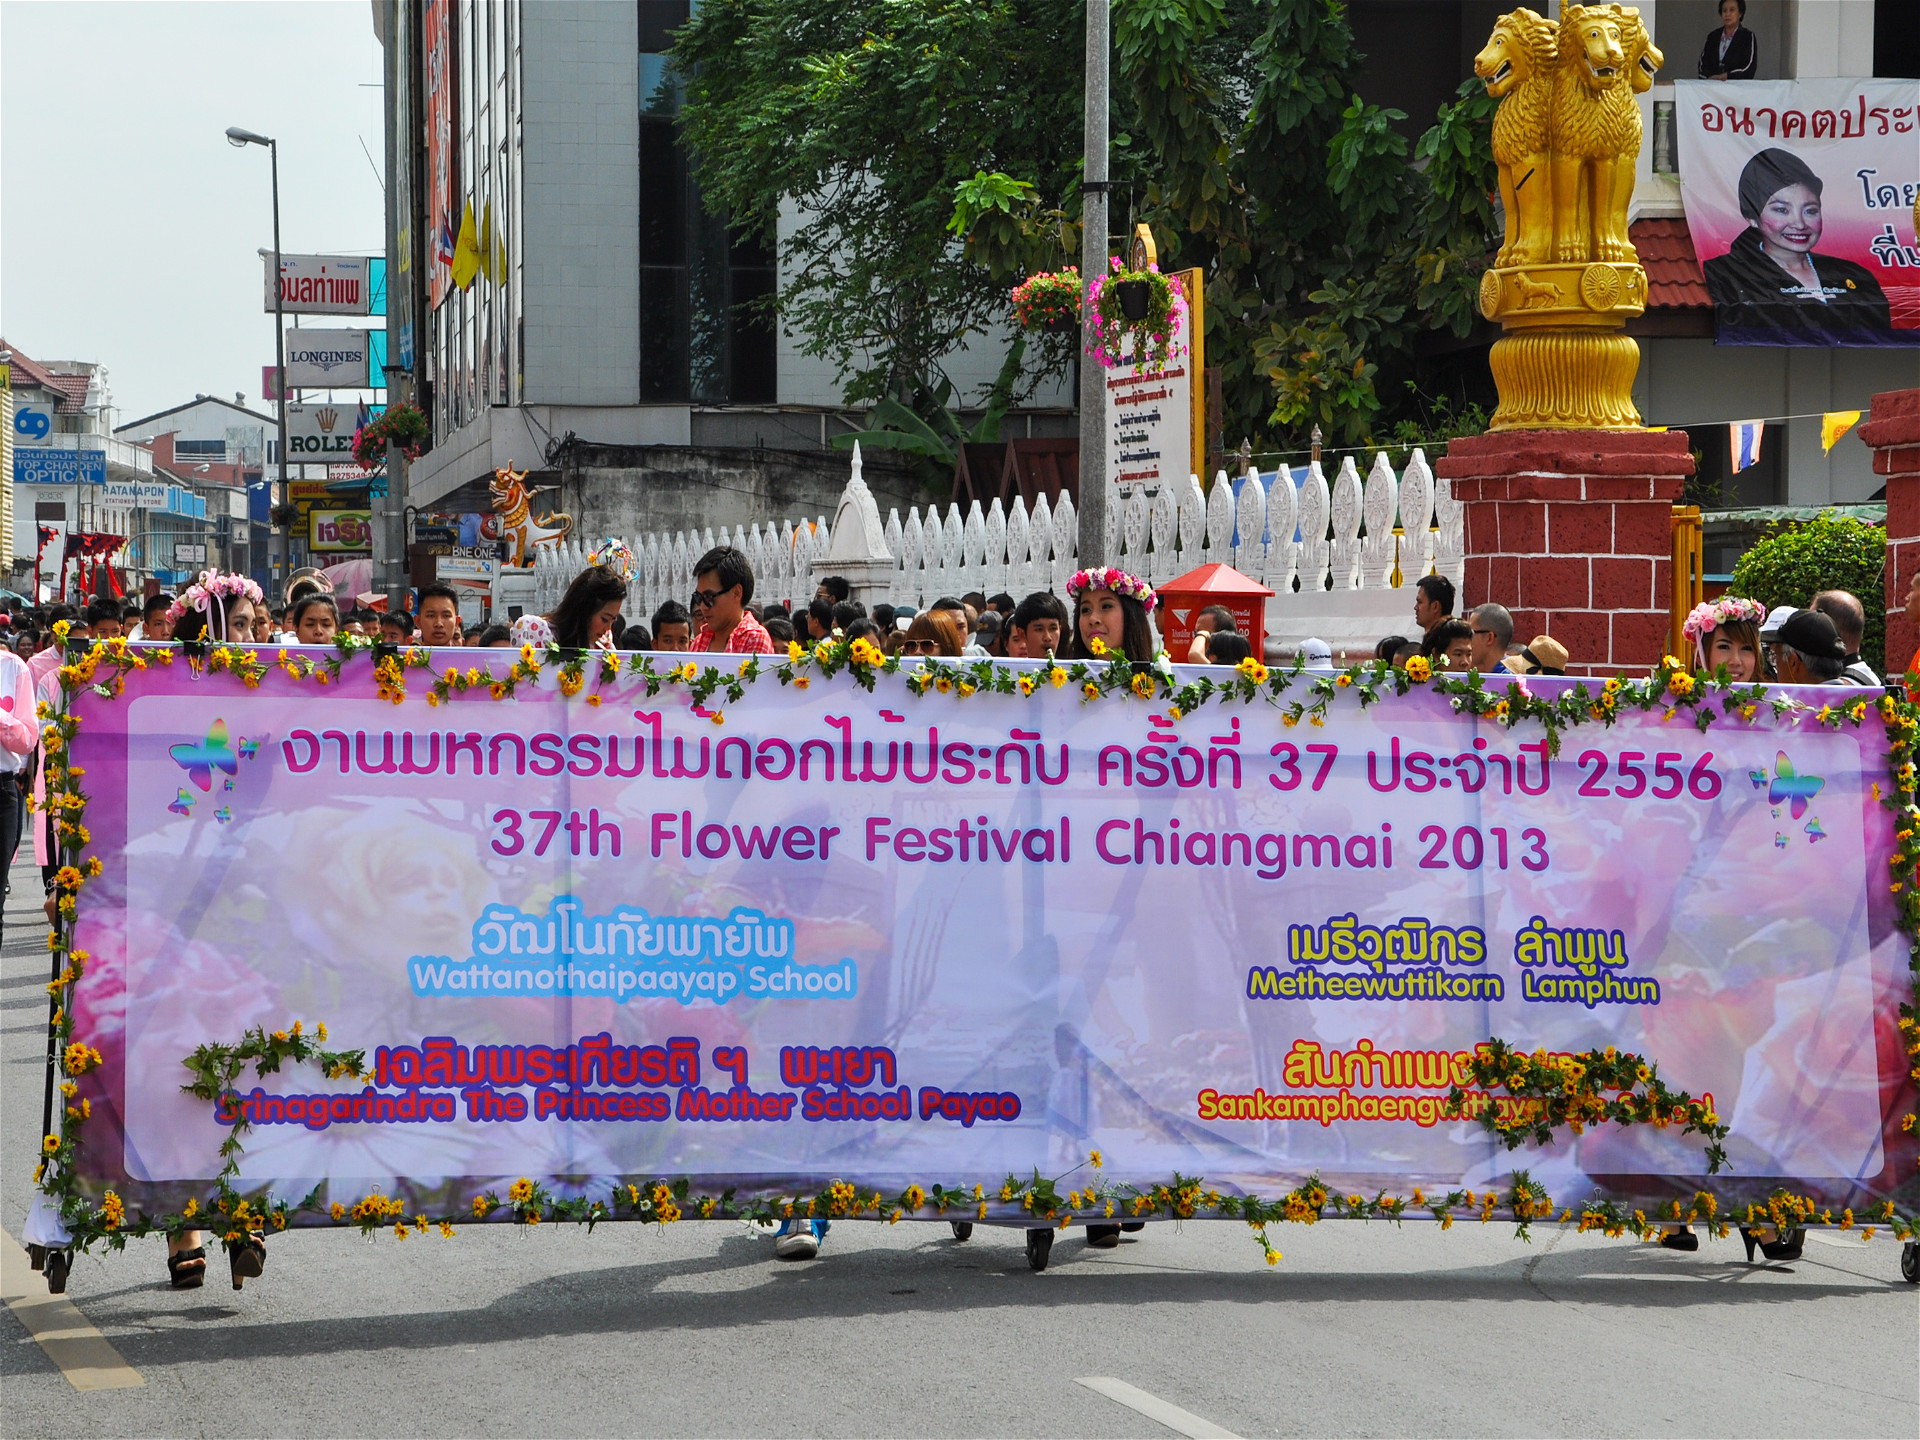 Таицы с транспарантом 37й фестиваль цветов Чиангмай